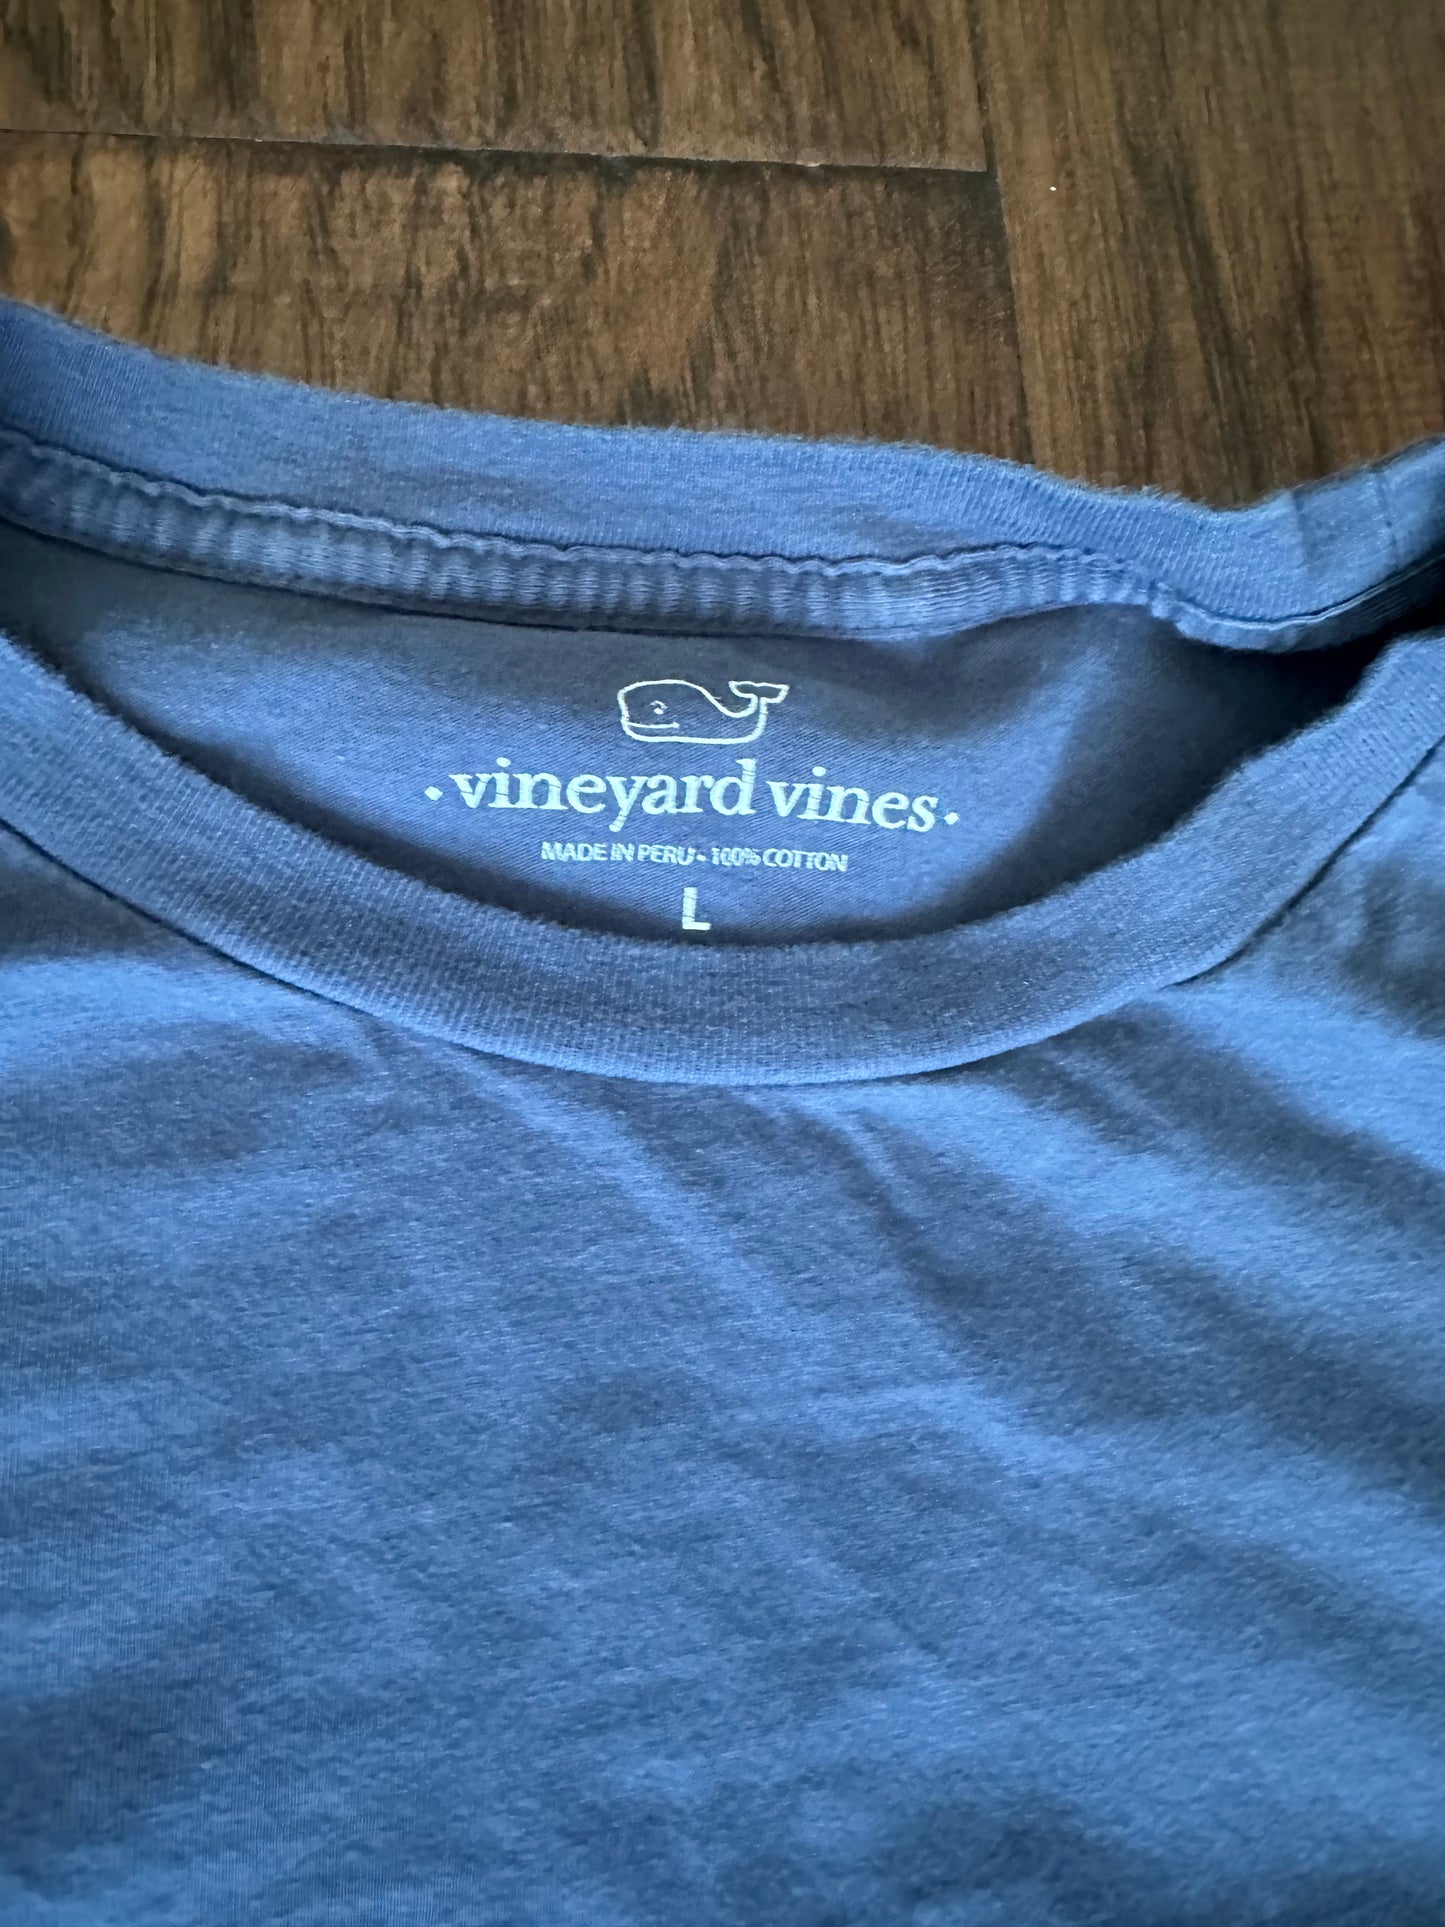 Vineyard Vines - Blue long sleeve - Large womens